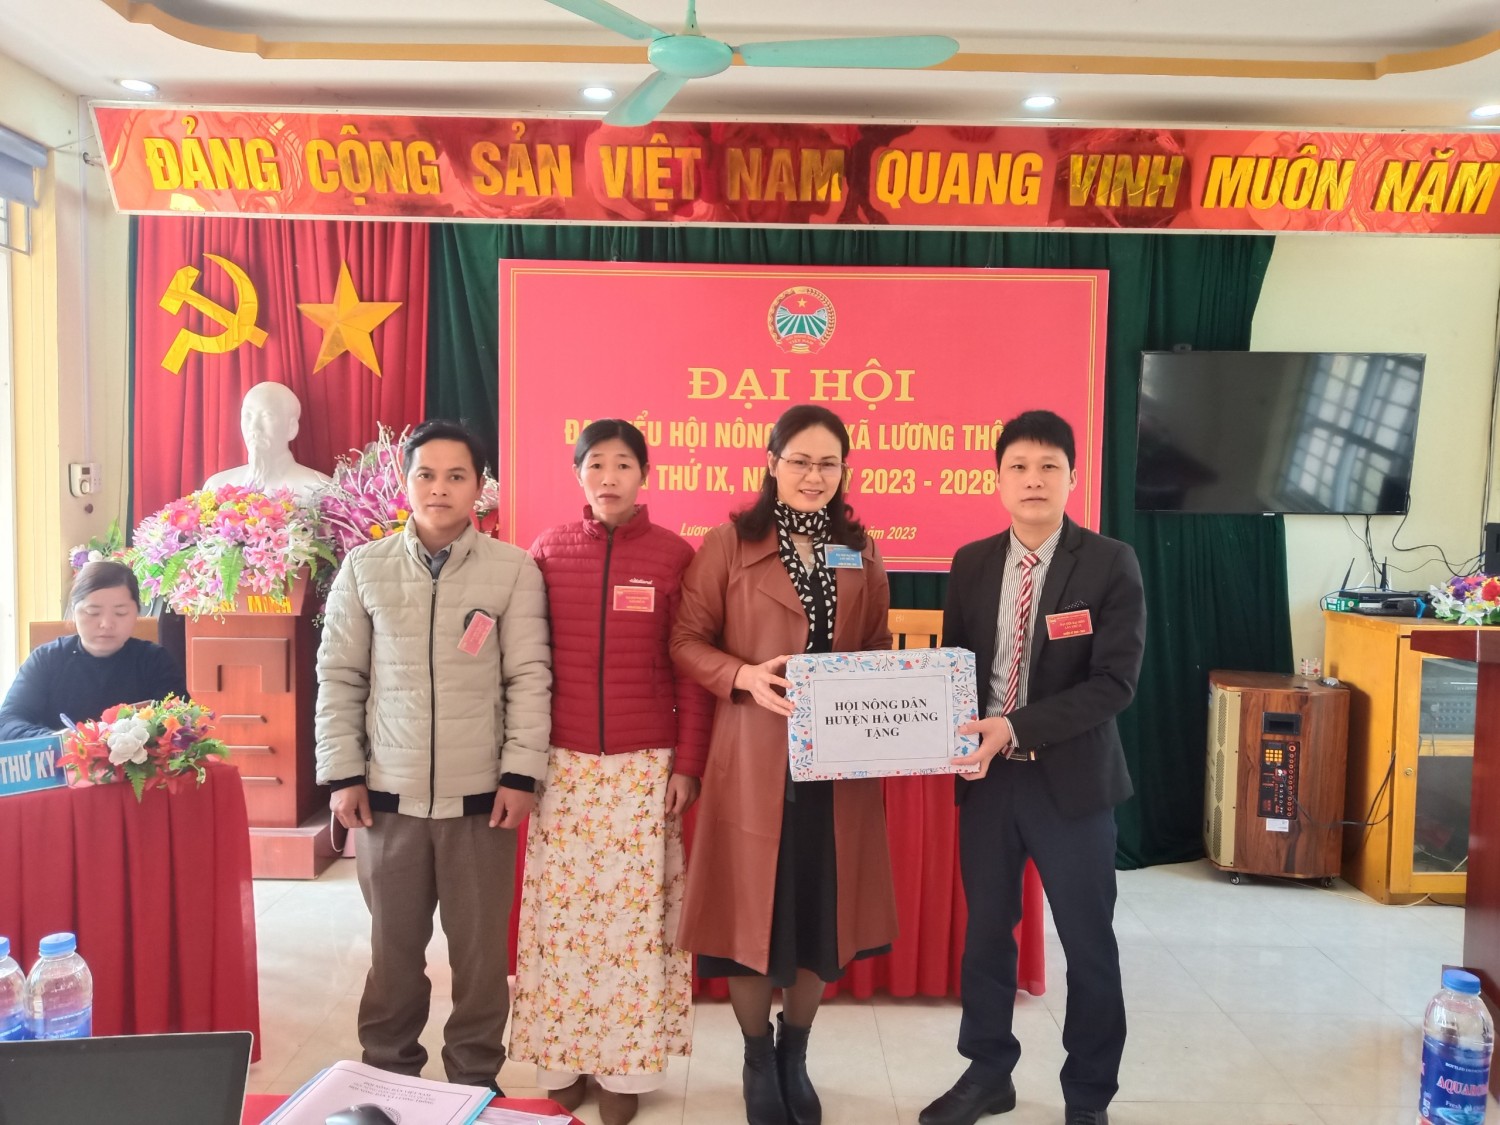 Đồng chí Linh Thanh Tuyền, chủ tịch HND huyện tặng quà Đại hội HND xã Lương Thông